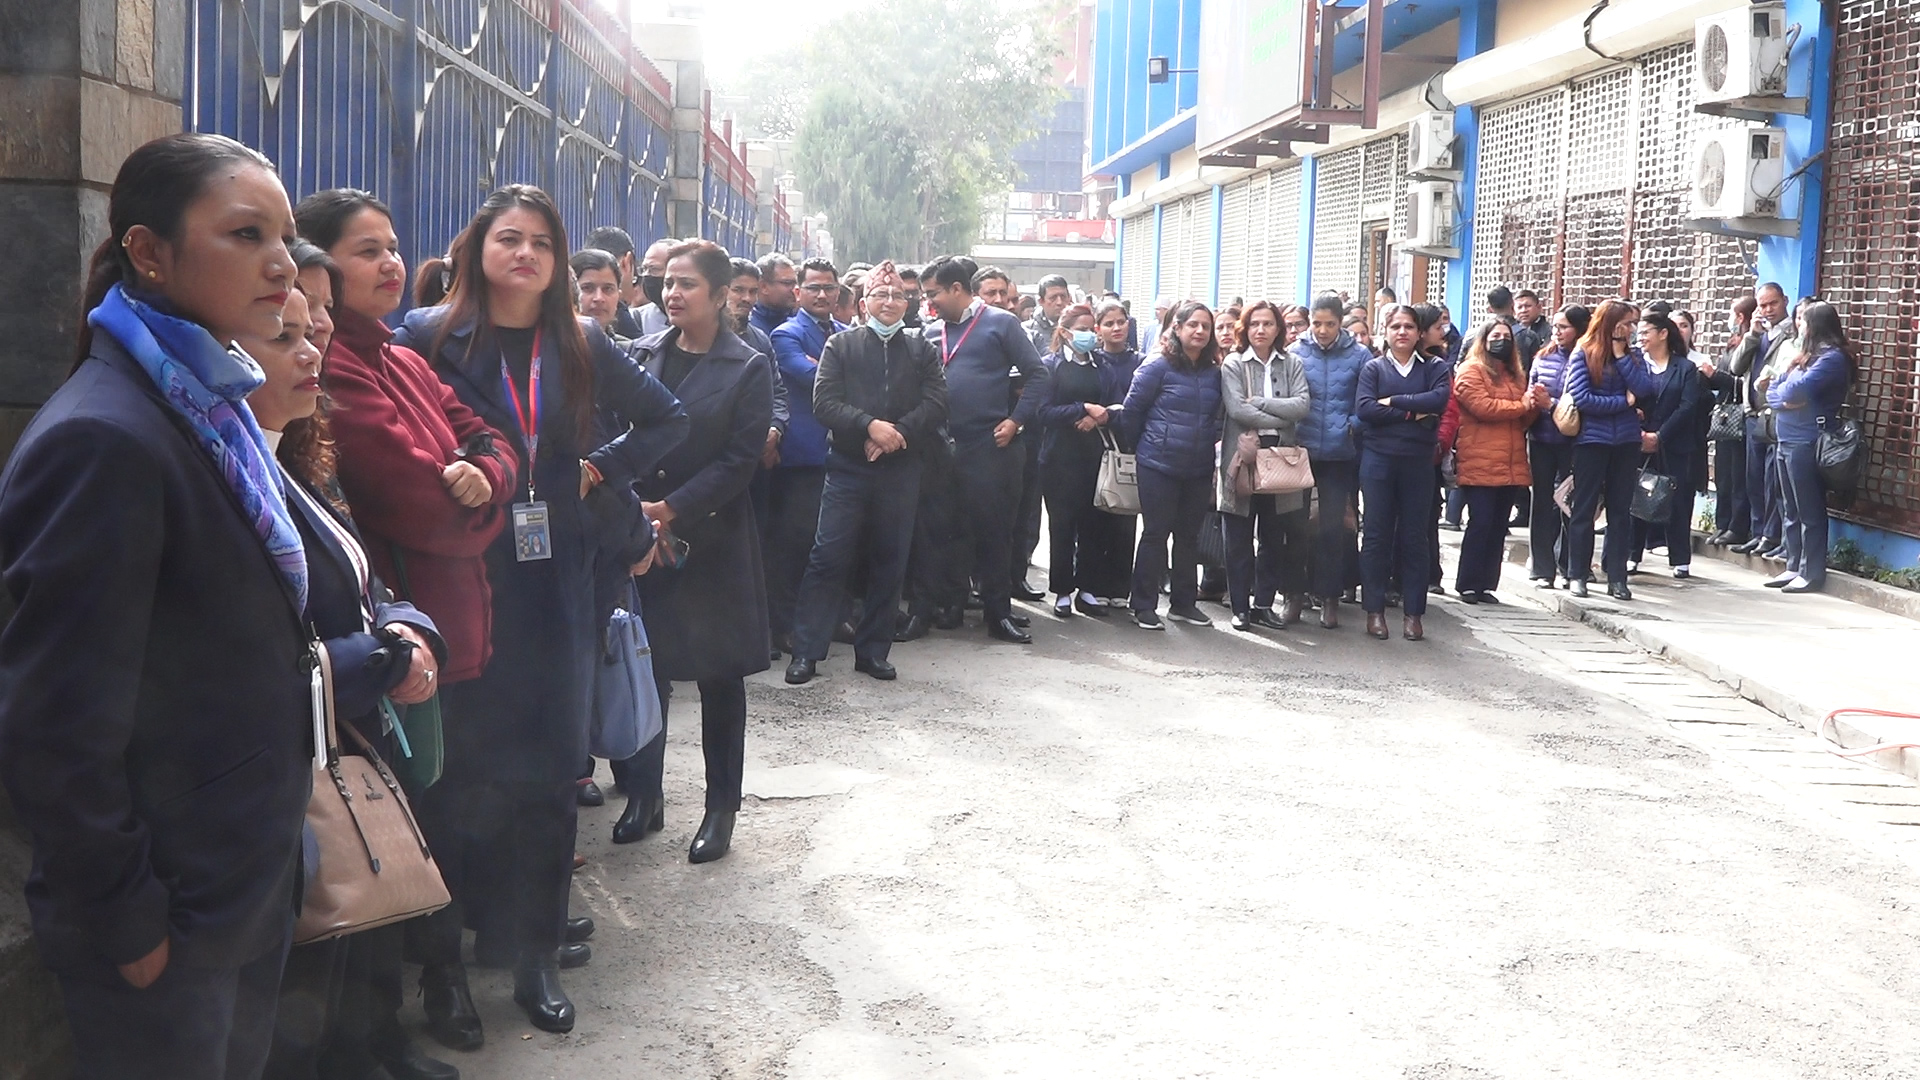 खुला प्रतिष्पर्धाका आधारमा ग्राउण्ड ह्याण्डलिङ दिने प्राधिकरणको निर्णयविरुद्ध नेपाल एयरलाइन्सका कर्मचारी आन्दोलित (भिडिओ)